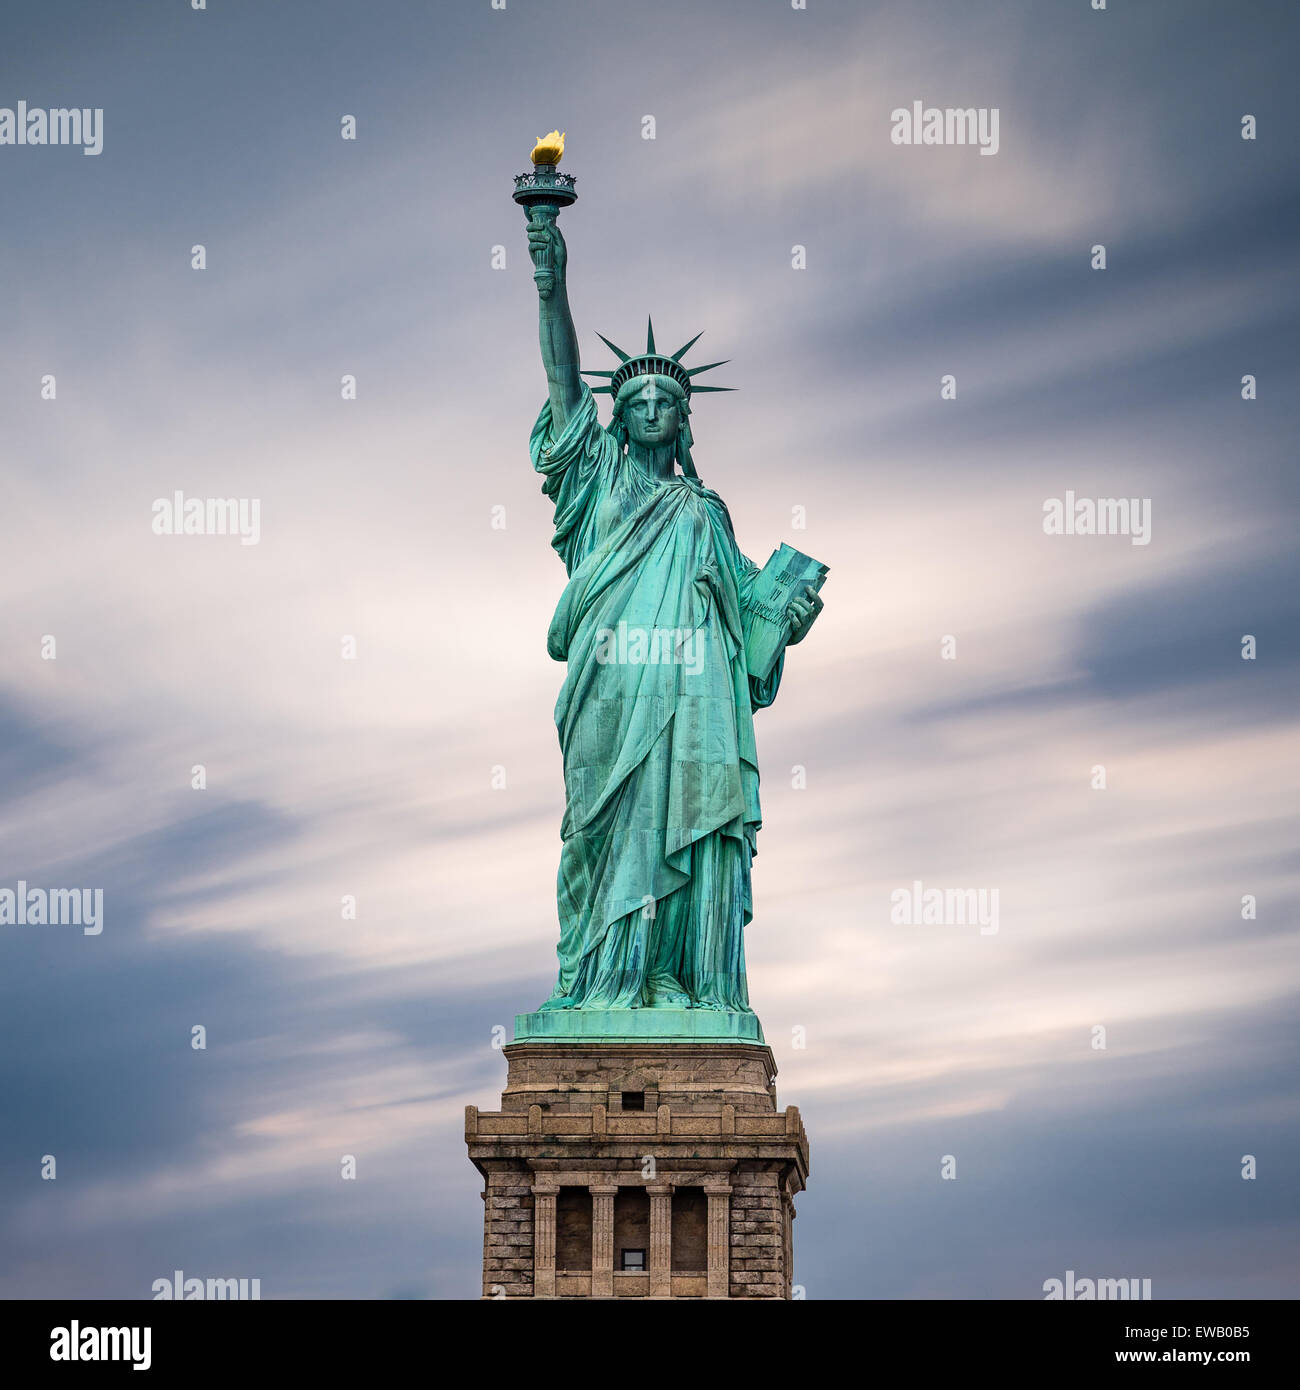 La Estatua de la libertad en la Ciudad de Nueva York, EE.UU.. Imagen en color. Foto de stock